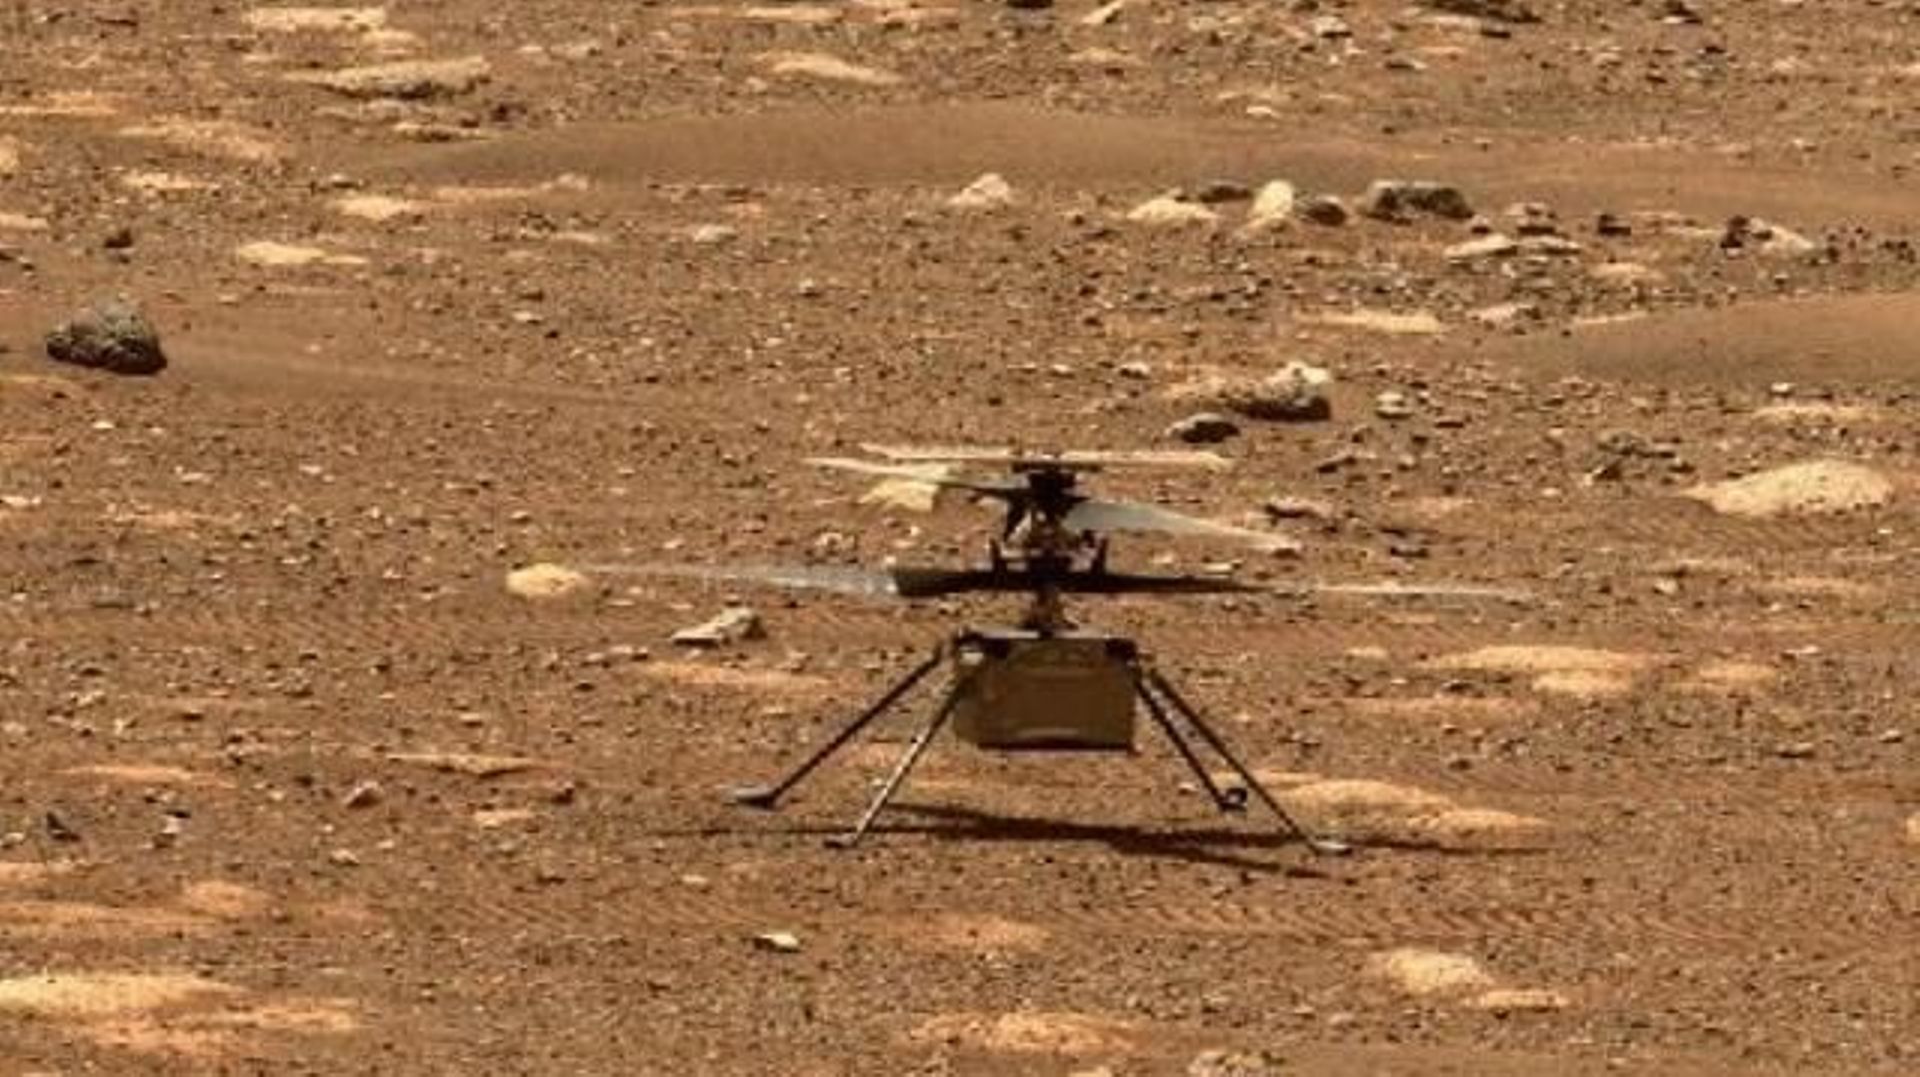 L'hélicoptère Ingenuity de la Nasa pourrait voler sur Mars lundi